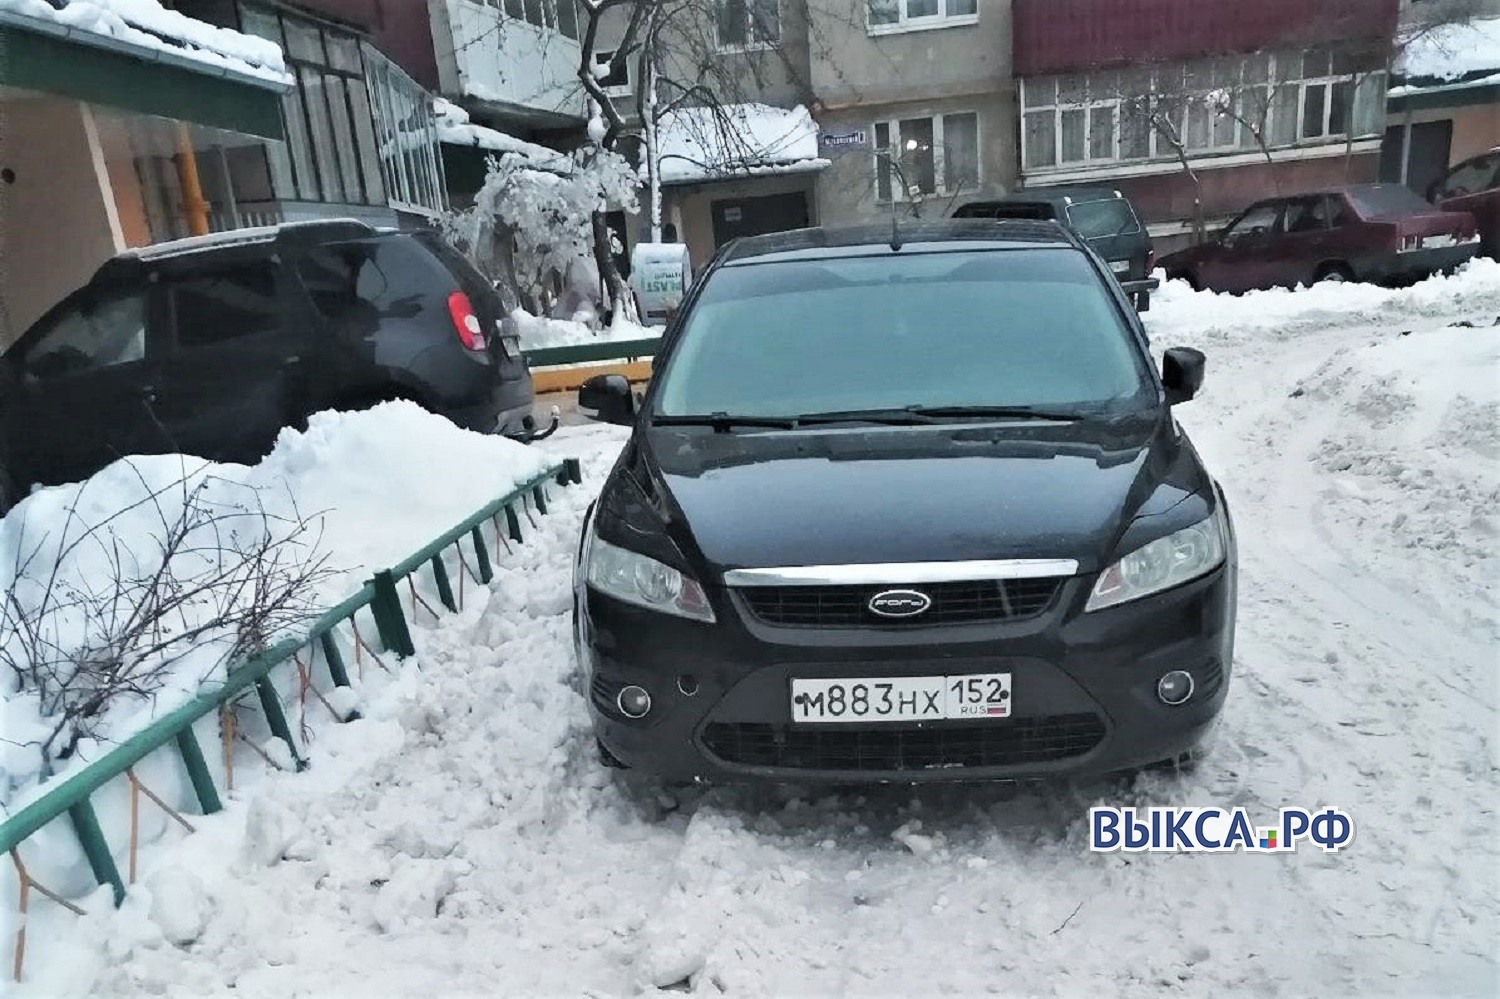 В микрорайоне Жуковского снова припарковались на тротуаре